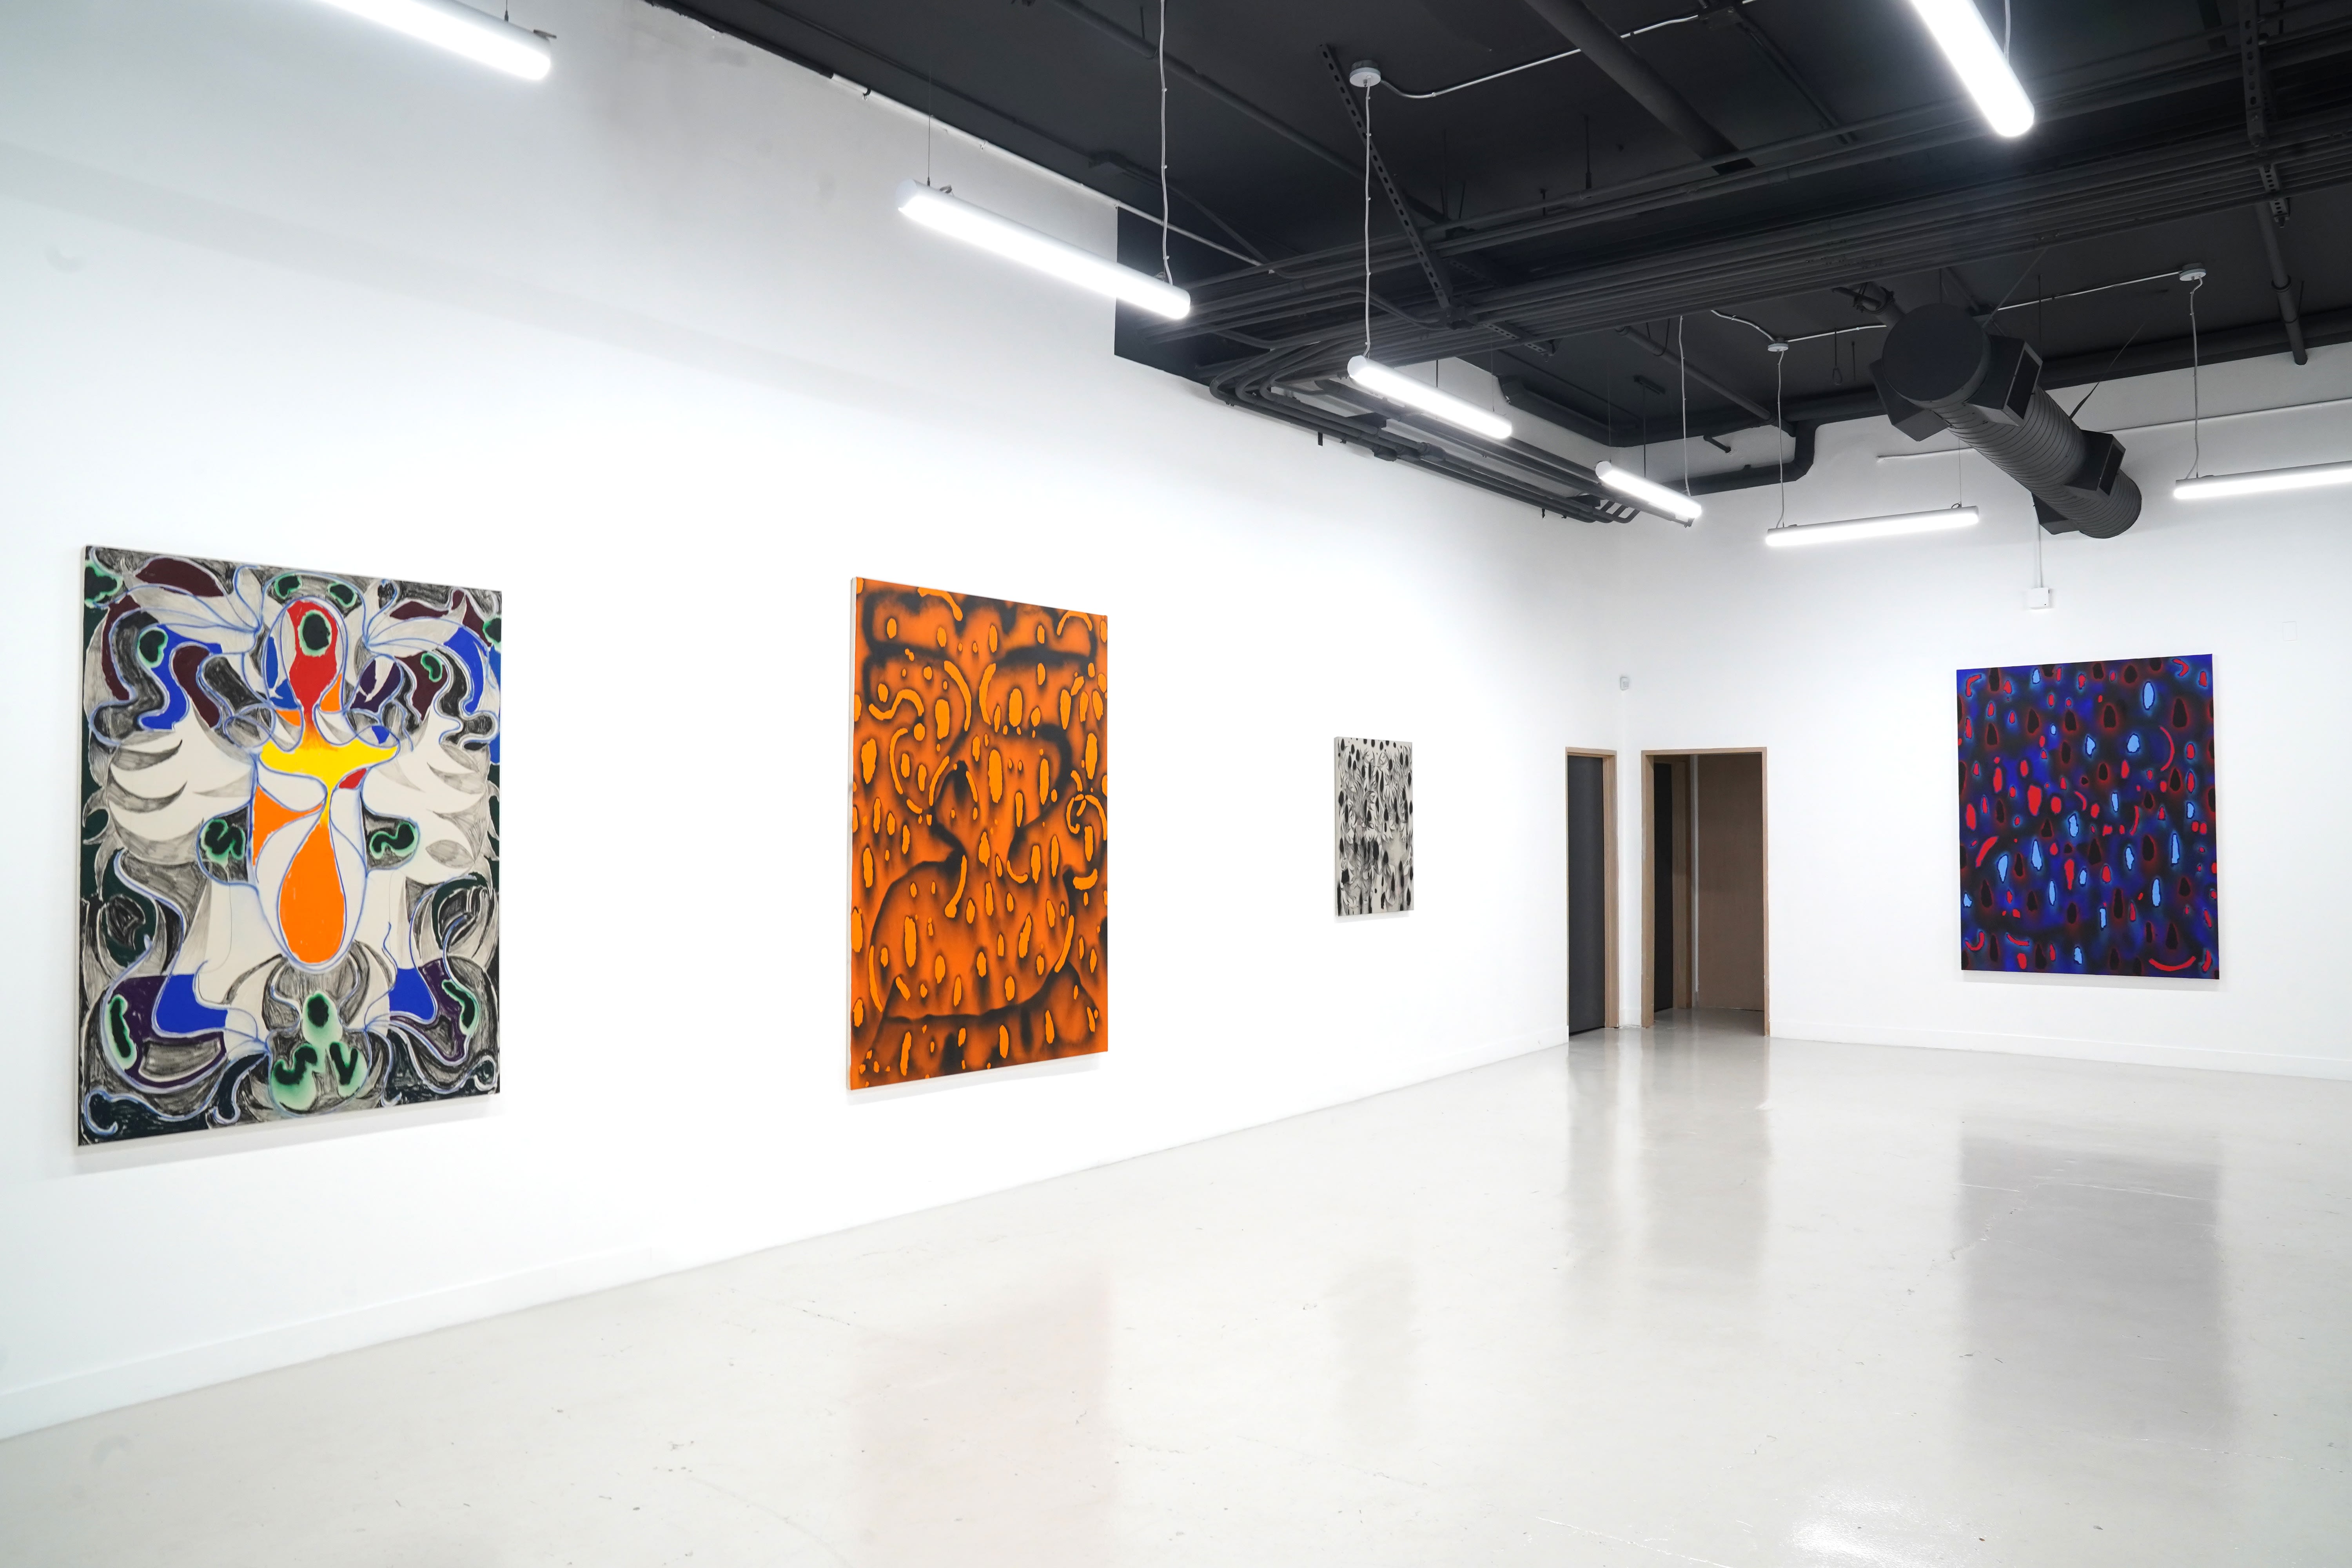 installation image of david von bahrs artwork in the gallery